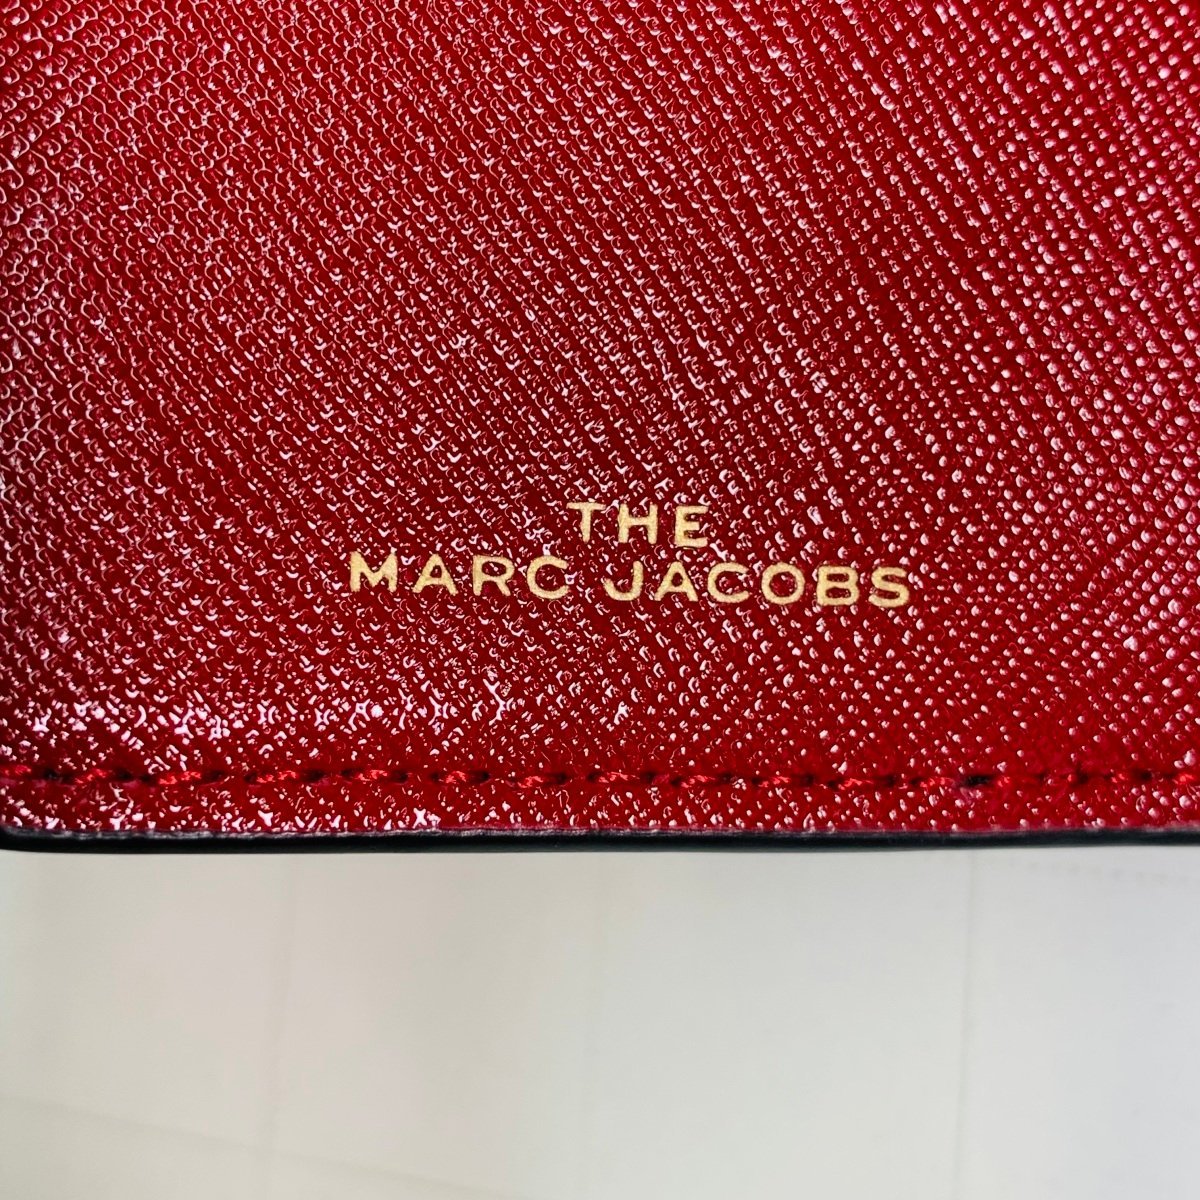 Marc Jacobs マークジェイコブス スナップショット バイカラー ウォレット 財布 ブラック ボルドー_画像5